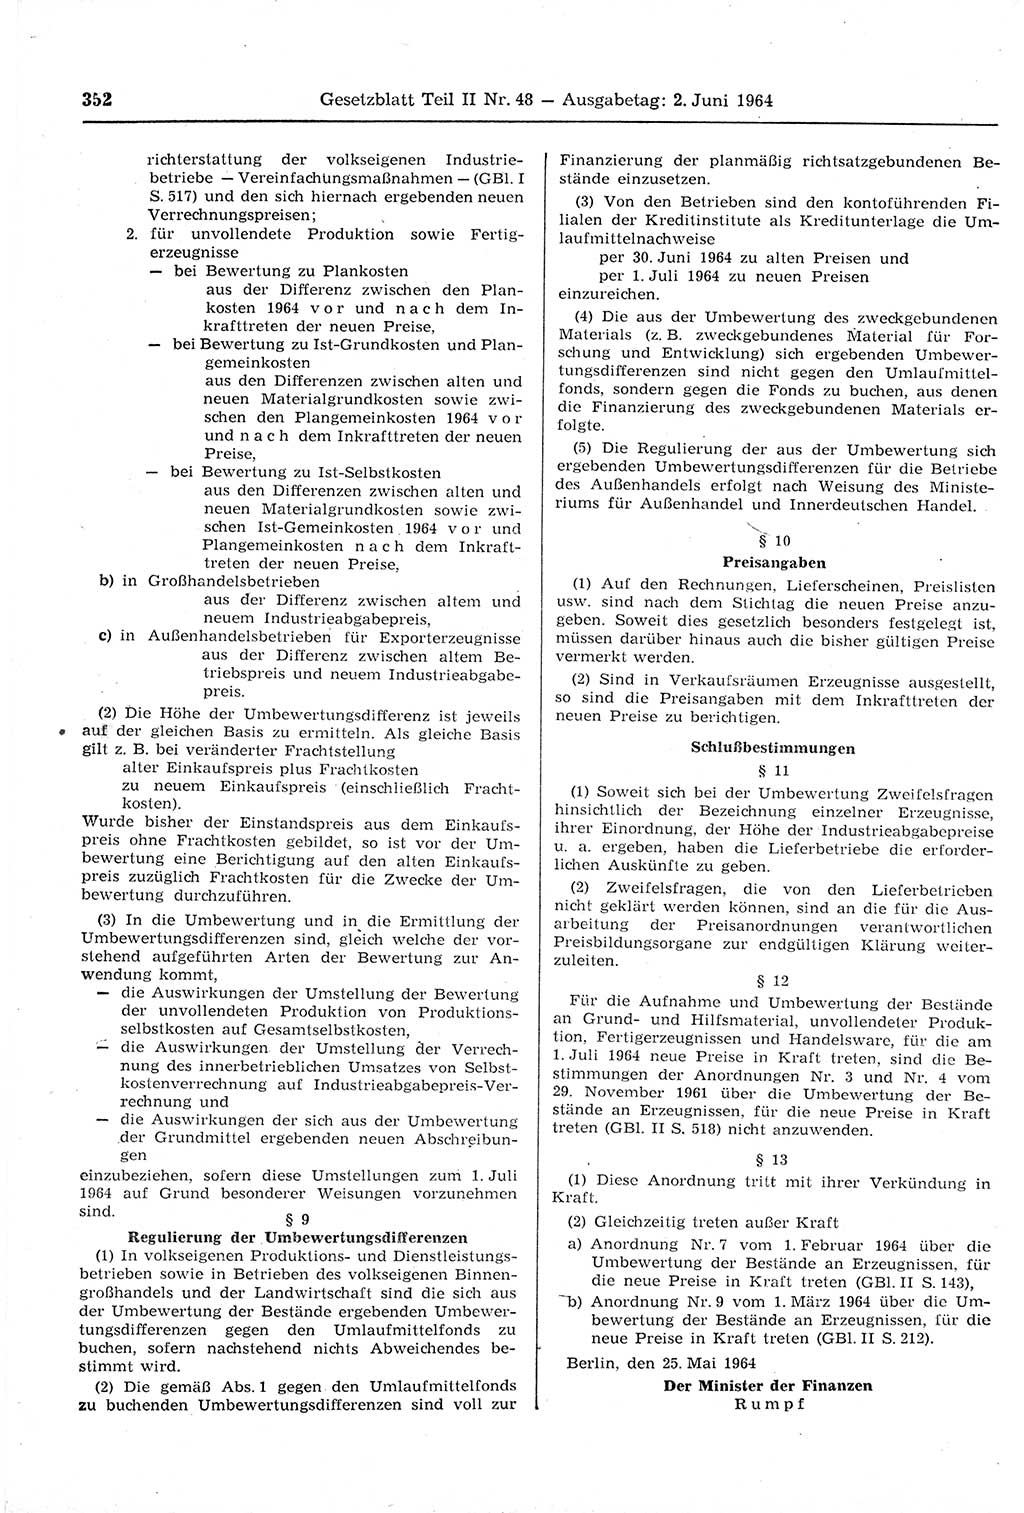 Gesetzblatt (GBl.) der Deutschen Demokratischen Republik (DDR) Teil ⅠⅠ 1964, Seite 352 (GBl. DDR ⅠⅠ 1964, S. 352)